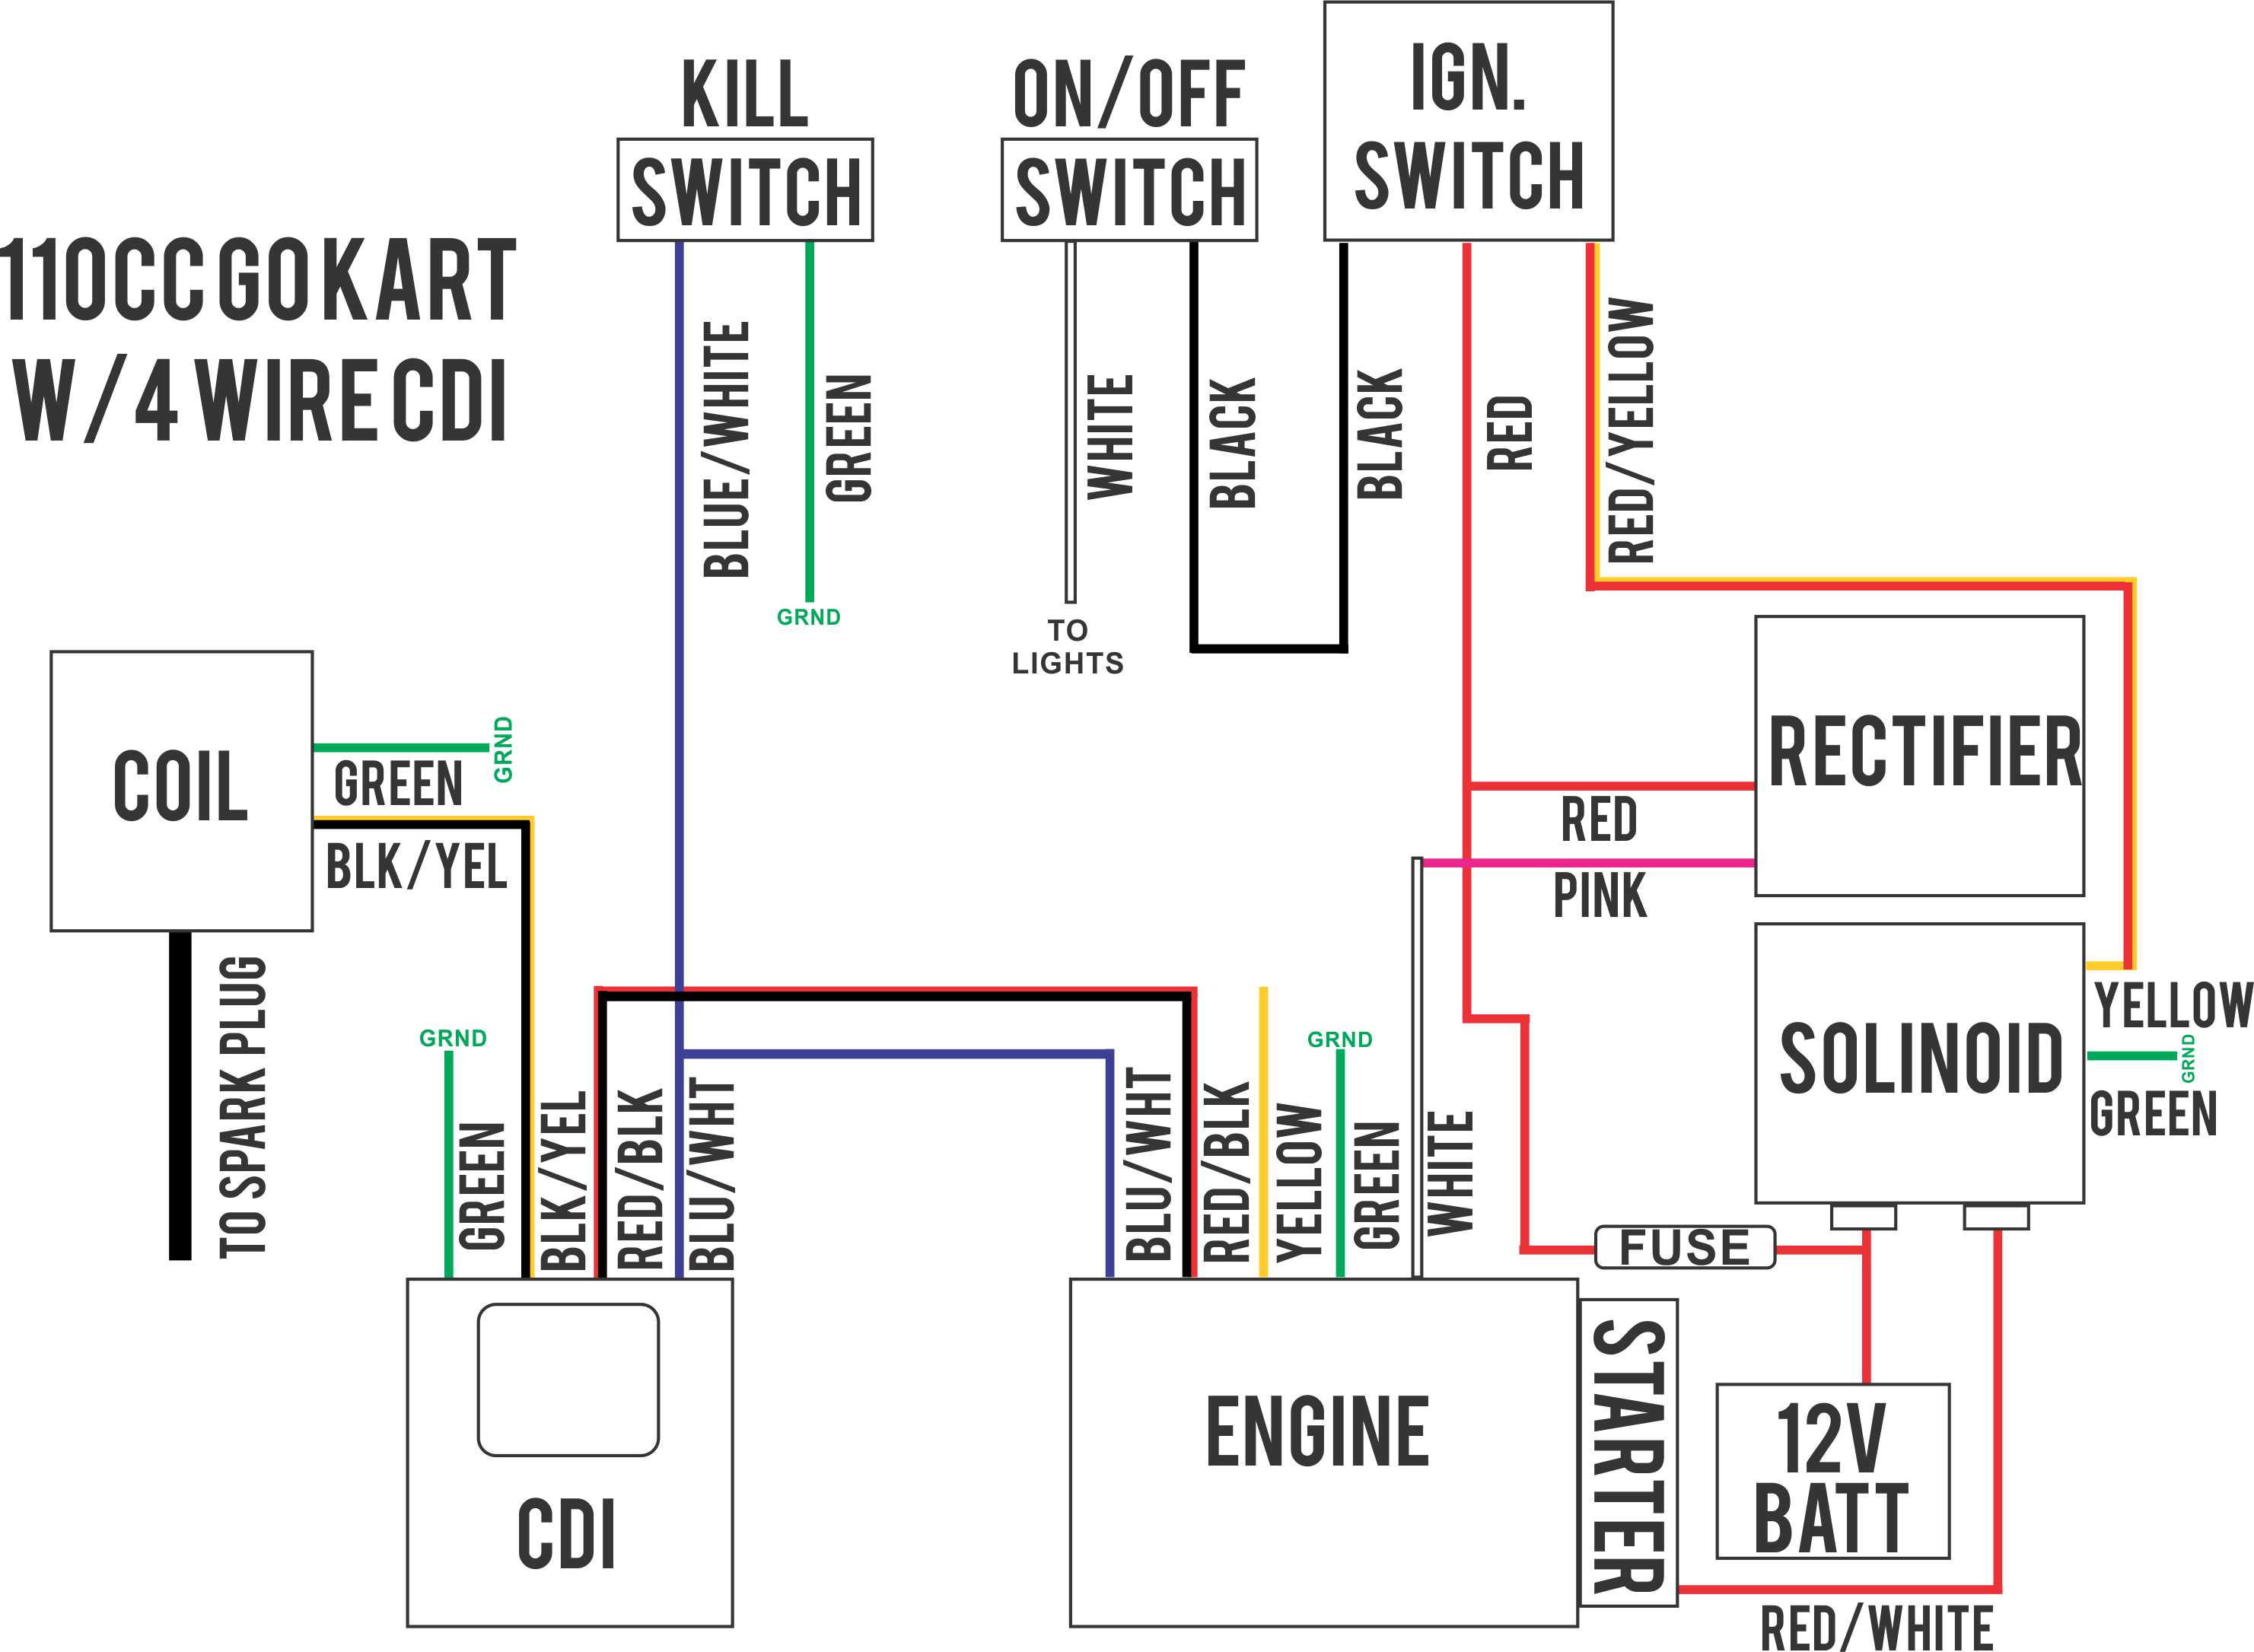 4 Wire Ignition Wiring - Wiring Diagram Data - Motorcycle Ignition Switch Wiring Diagram